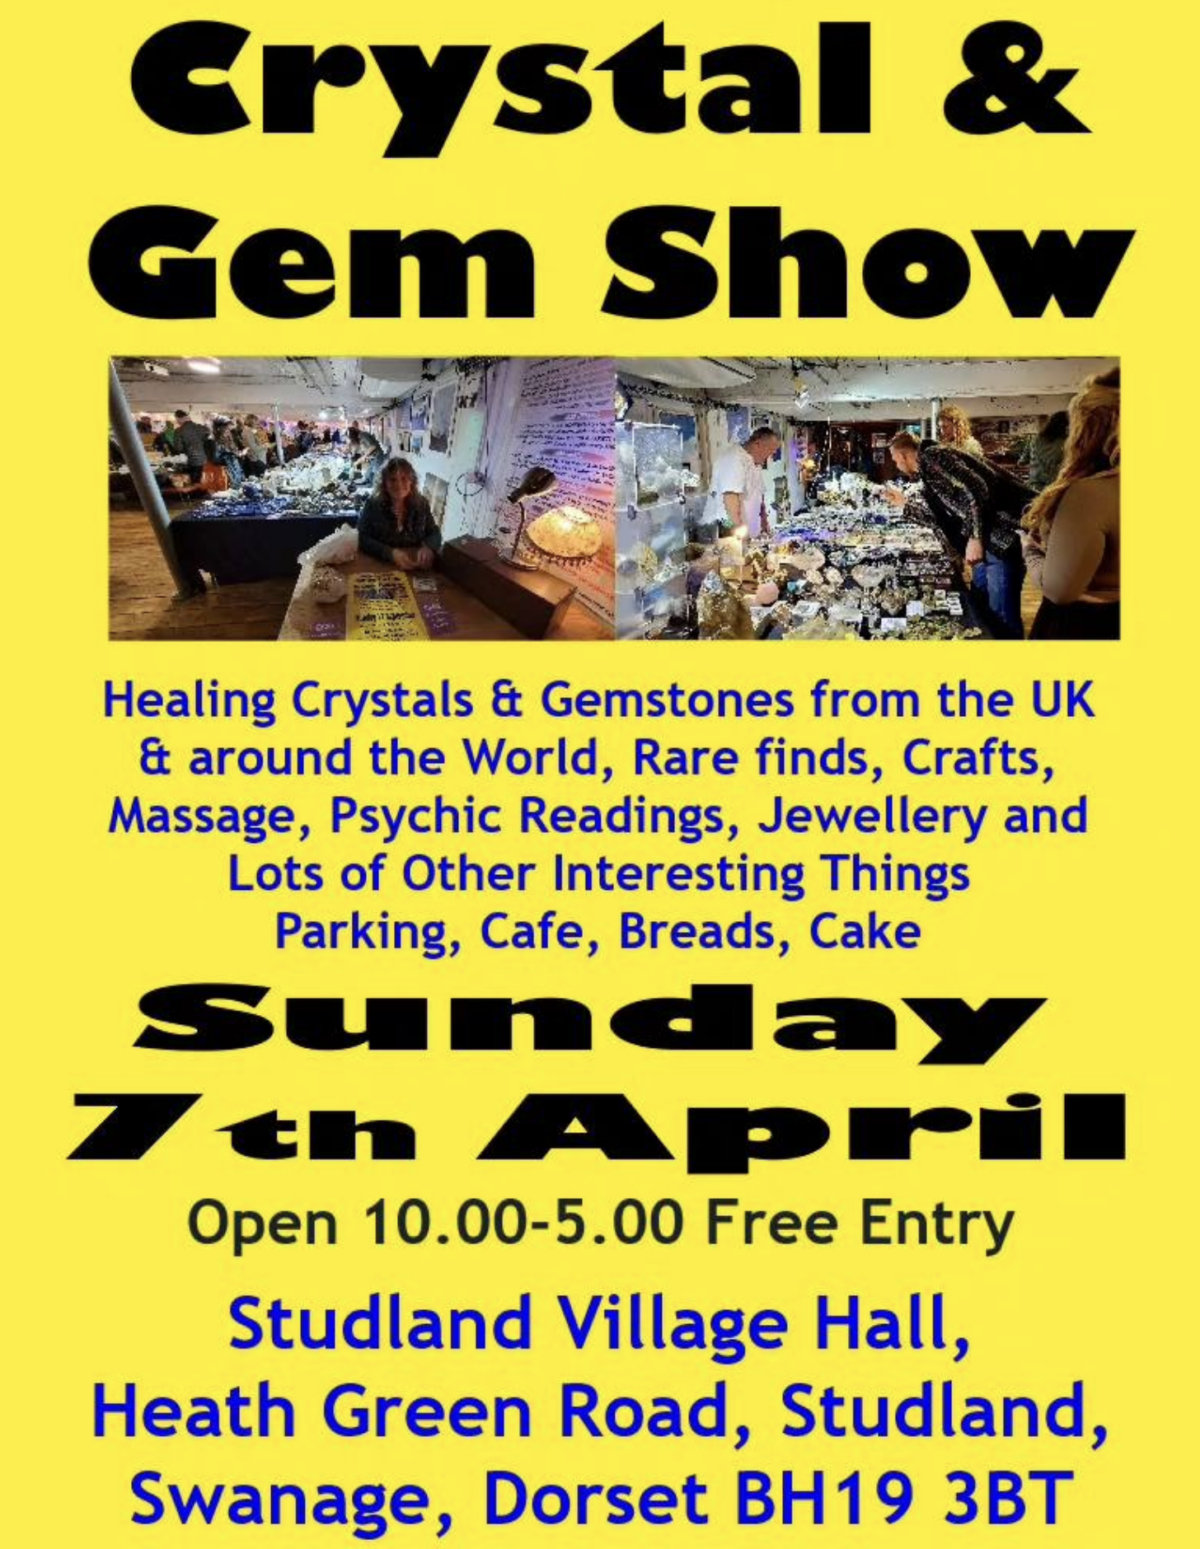 Studland Crystal & Gem show poster